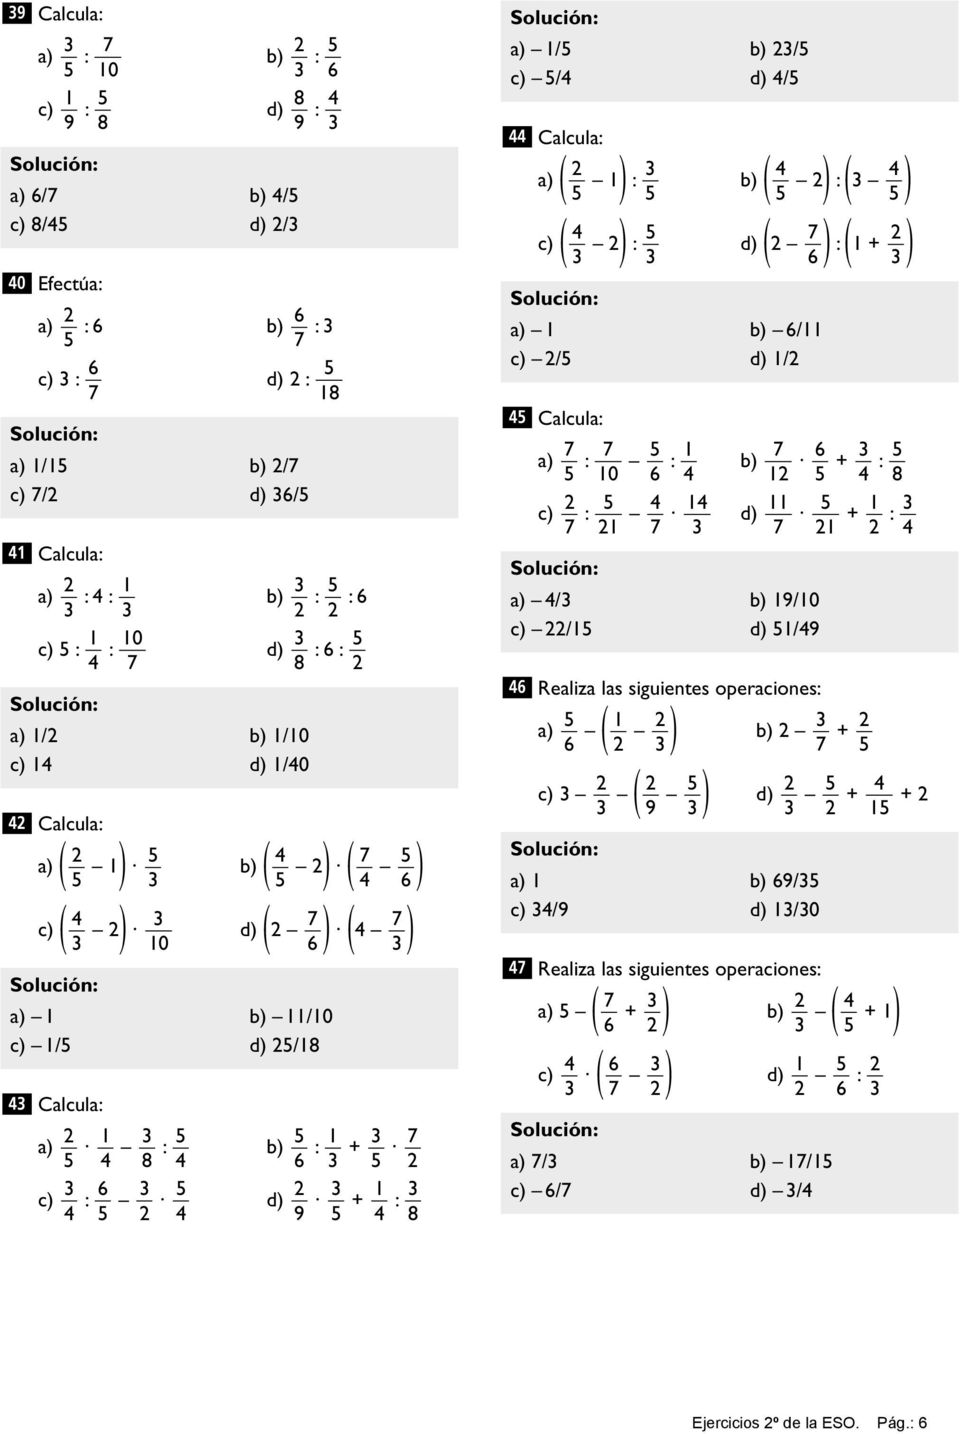 ( b) ) ( ) : c) ( ) ( ) ( ) : d) : 1 + 6 a) 1 b) 6/11 c) / d) 1/ Calcula: 1 6 a) : : b) + : 10 6 1 8 1 11 1 c) : d) + : 1 1 a) / b) 19/10 c) /1 d) 1/9 6 Realiza las siguientes operaciones: